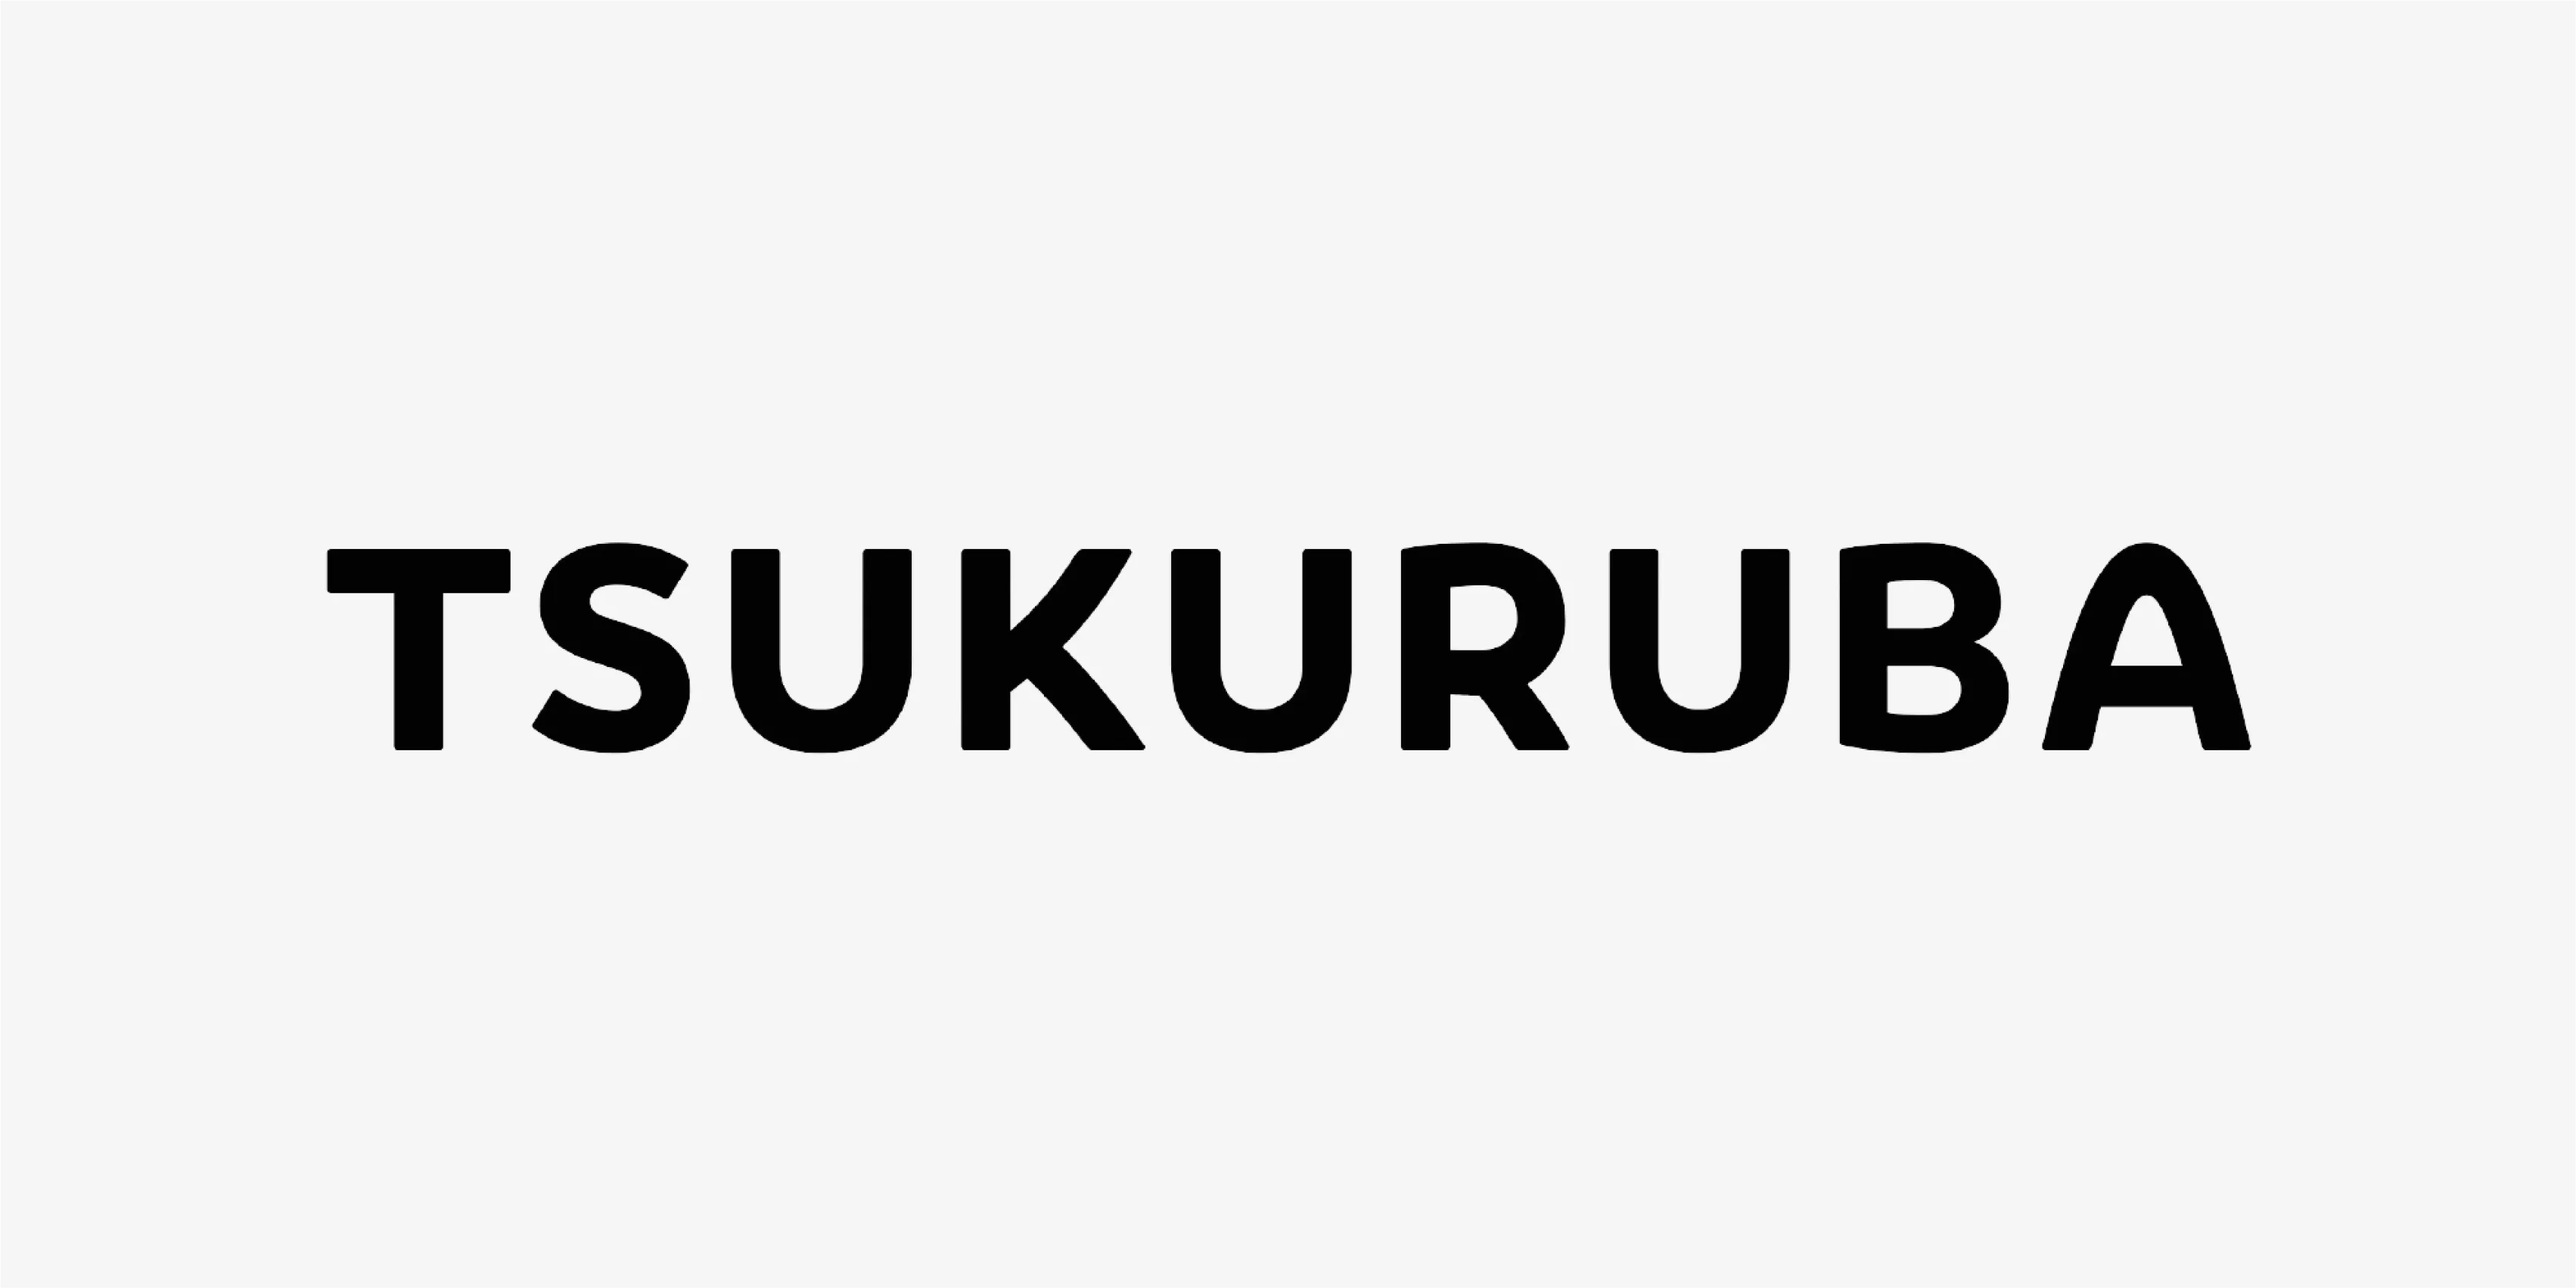 TSUKURUBA